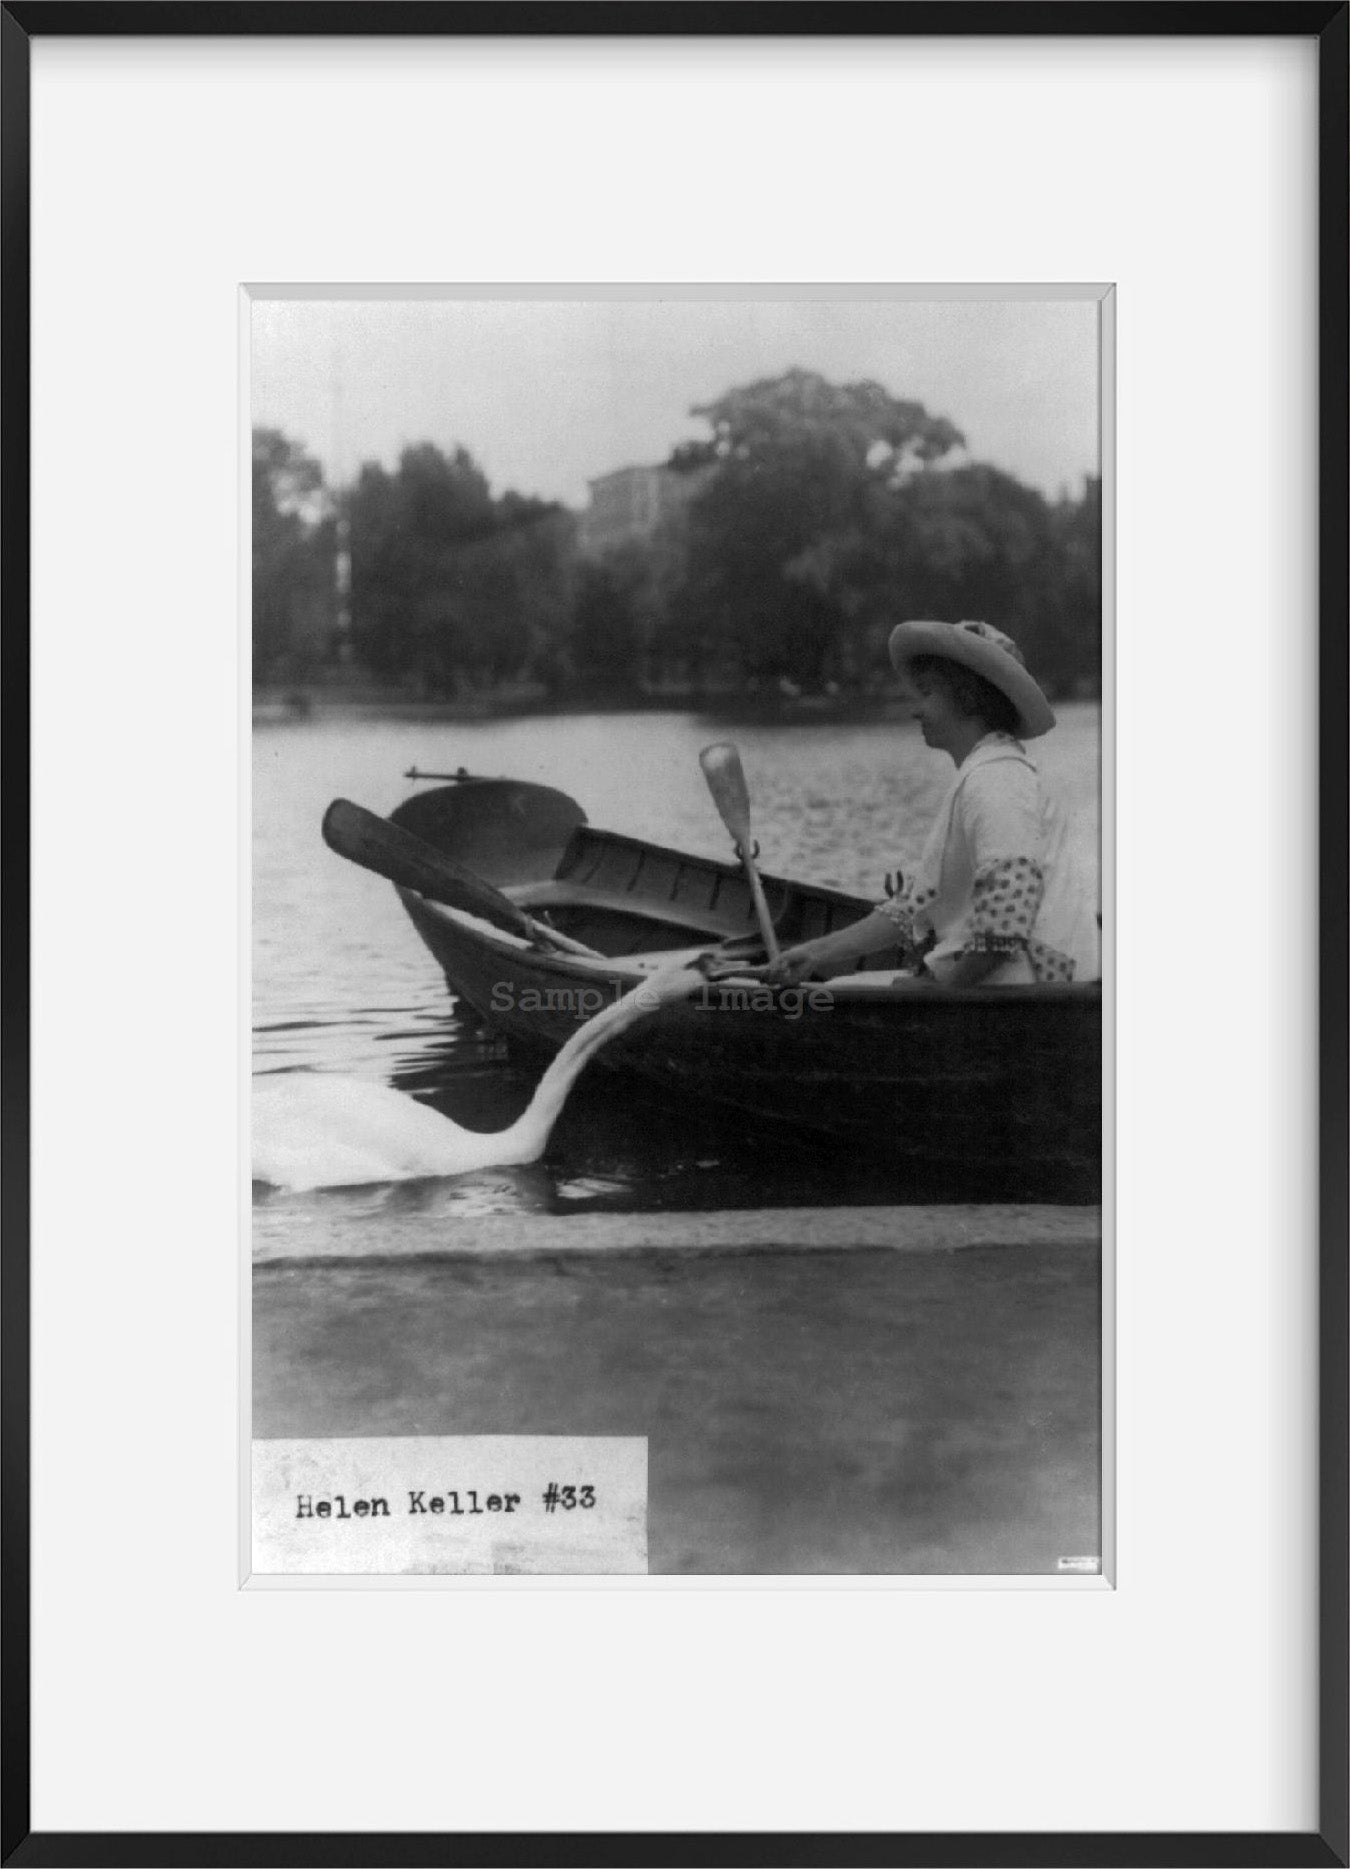 Photo: Helen Keller in a boat by shore, feeding swan, c1913